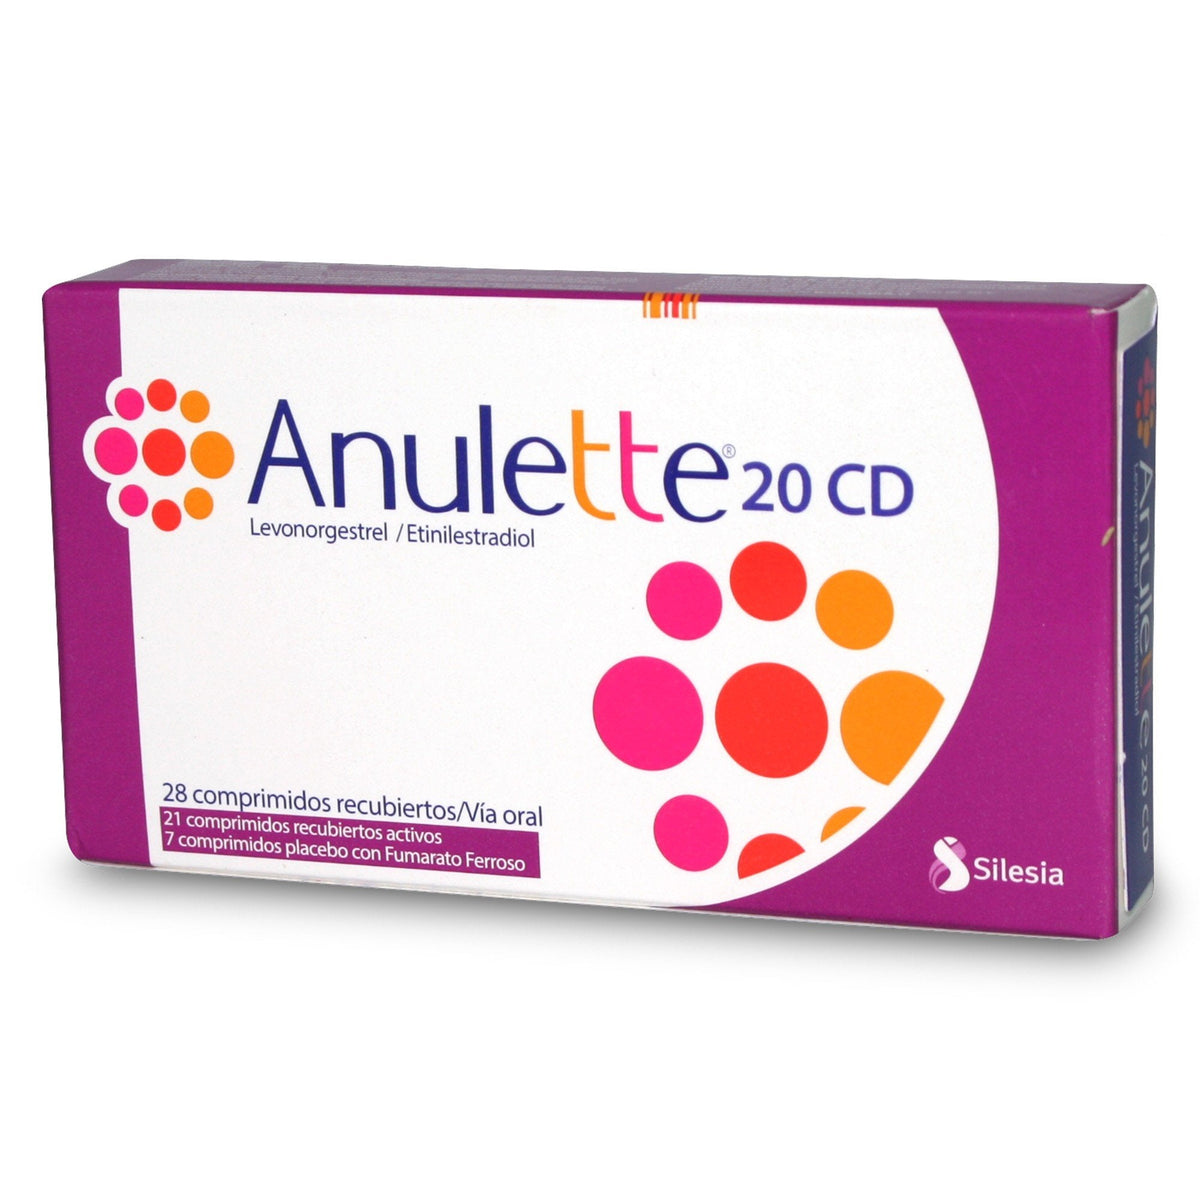 Anulette 20 CD Comprimidos Recubiertos PRONTO VENCIMIENTO